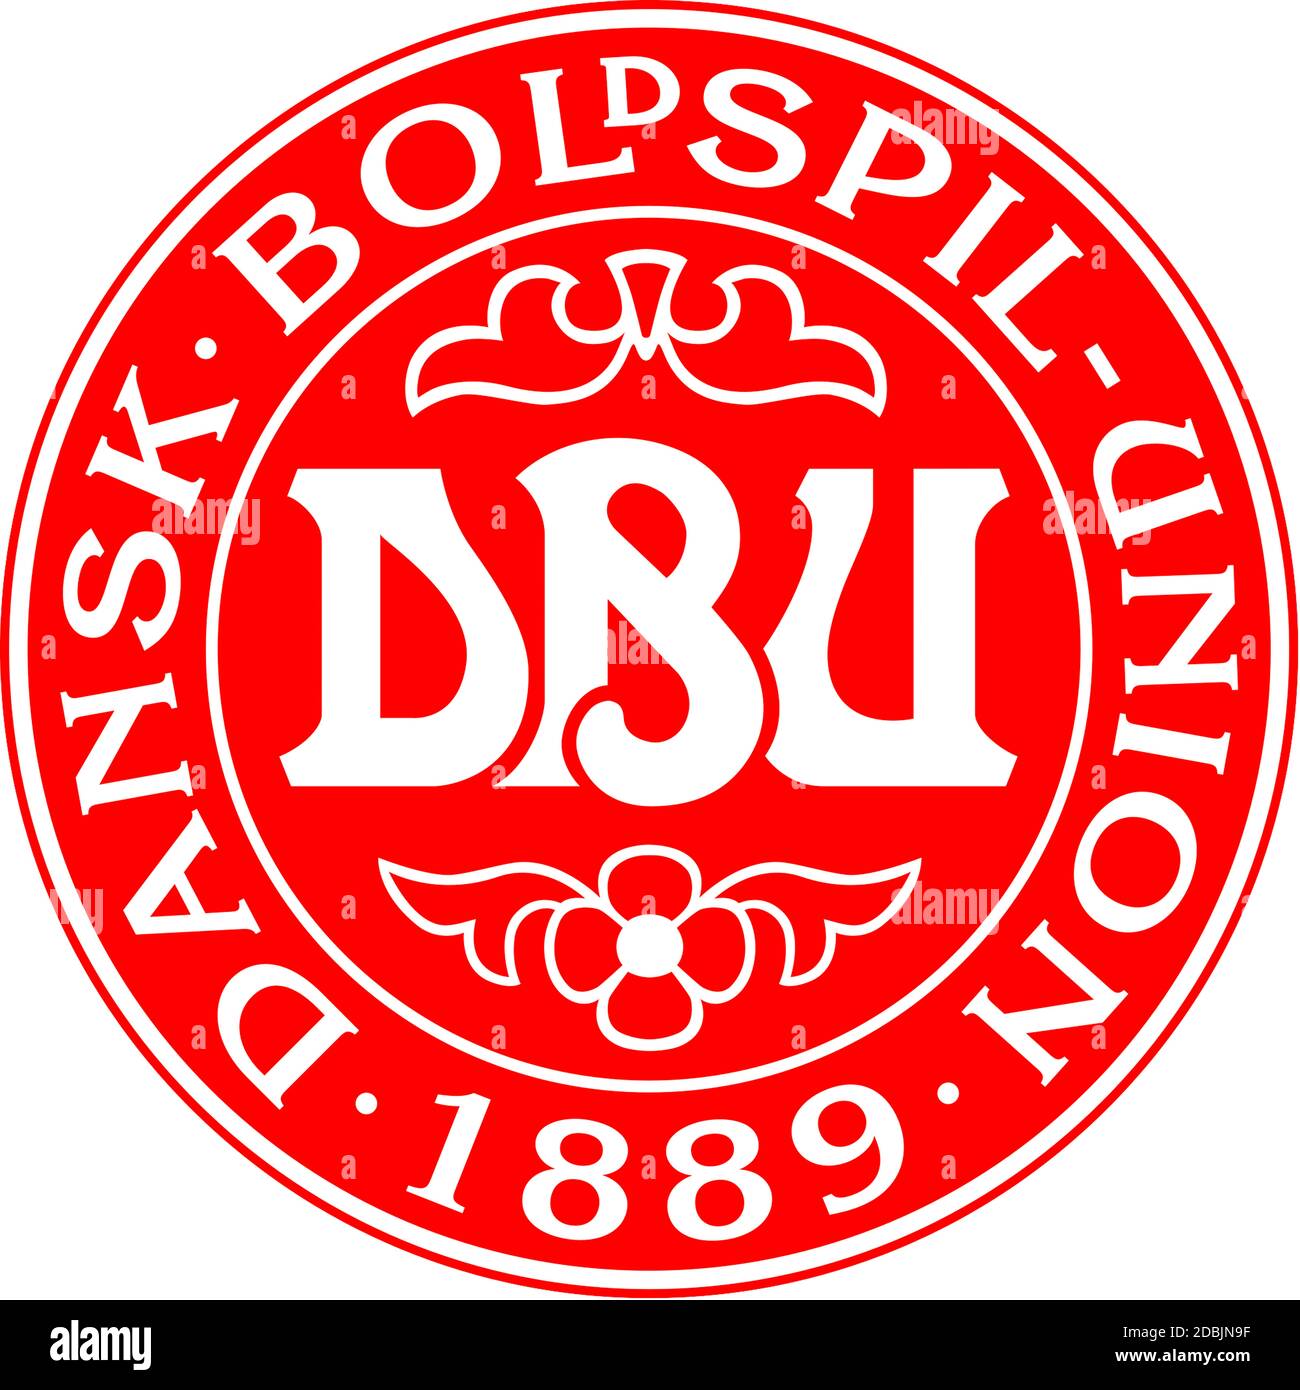 Logo de l'Union danoise de football DBU et de l'équipe nationale - Danemark. Banque D'Images